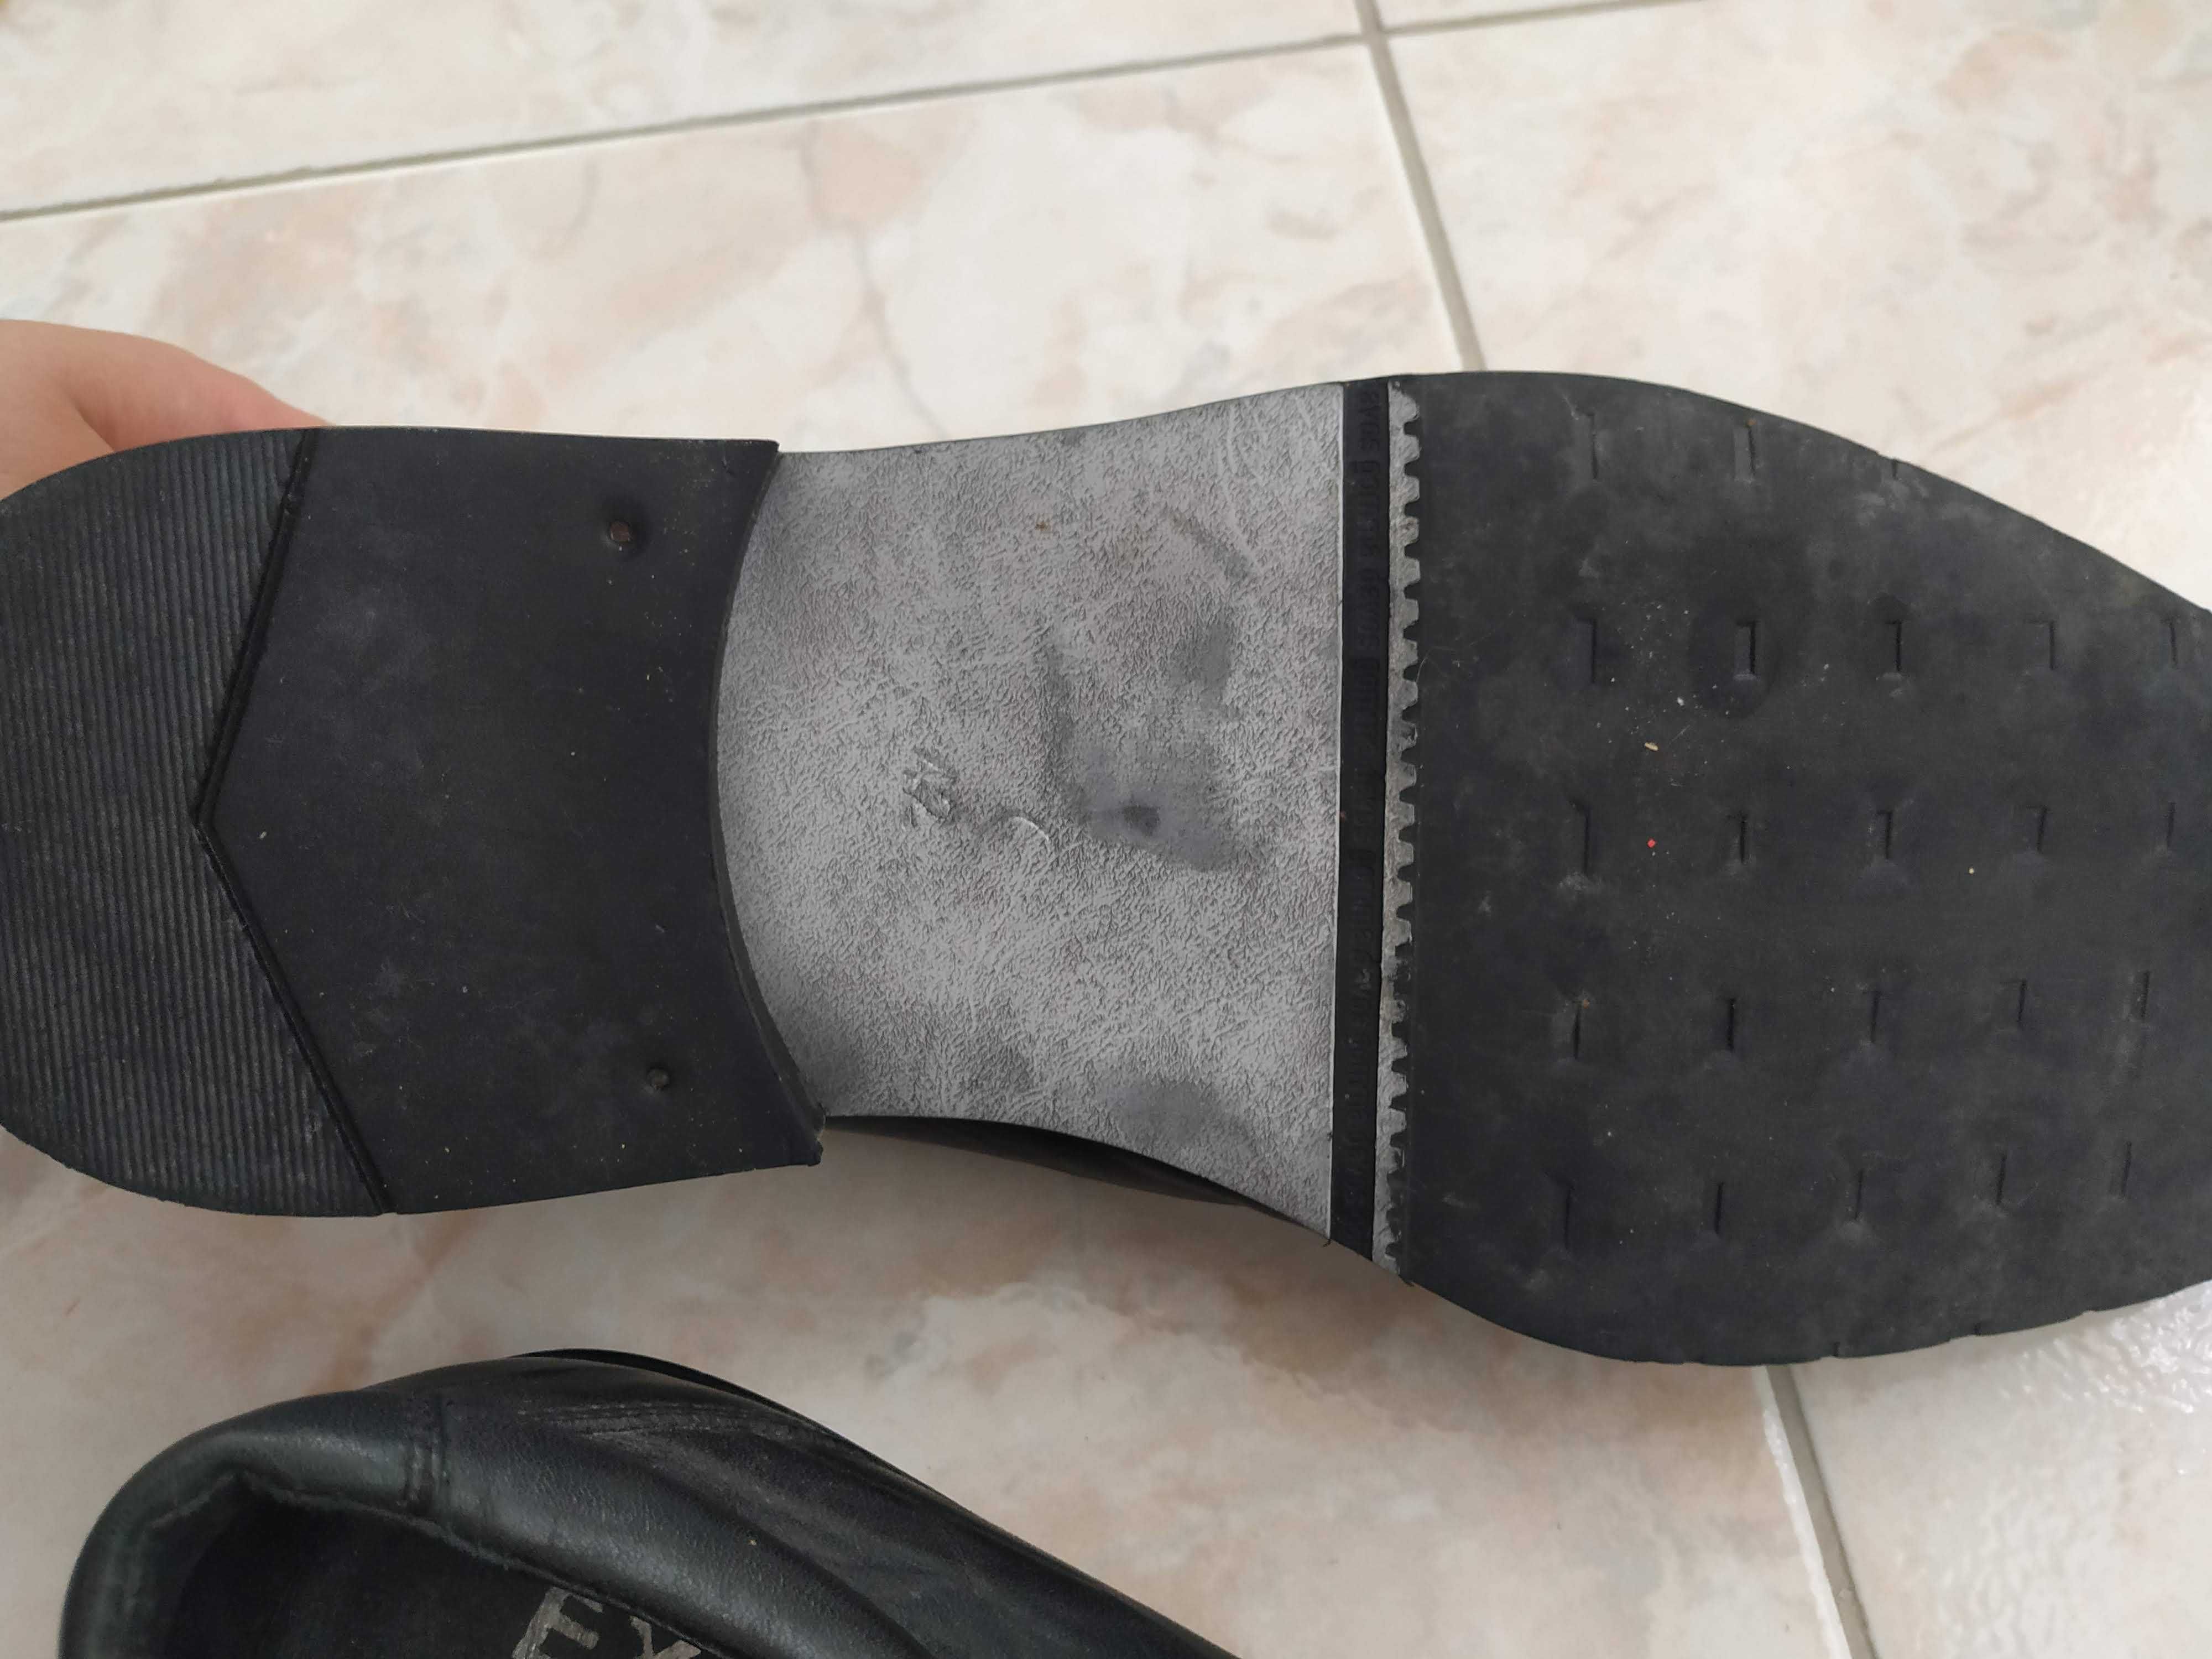 Sapatos pretos de pele 42